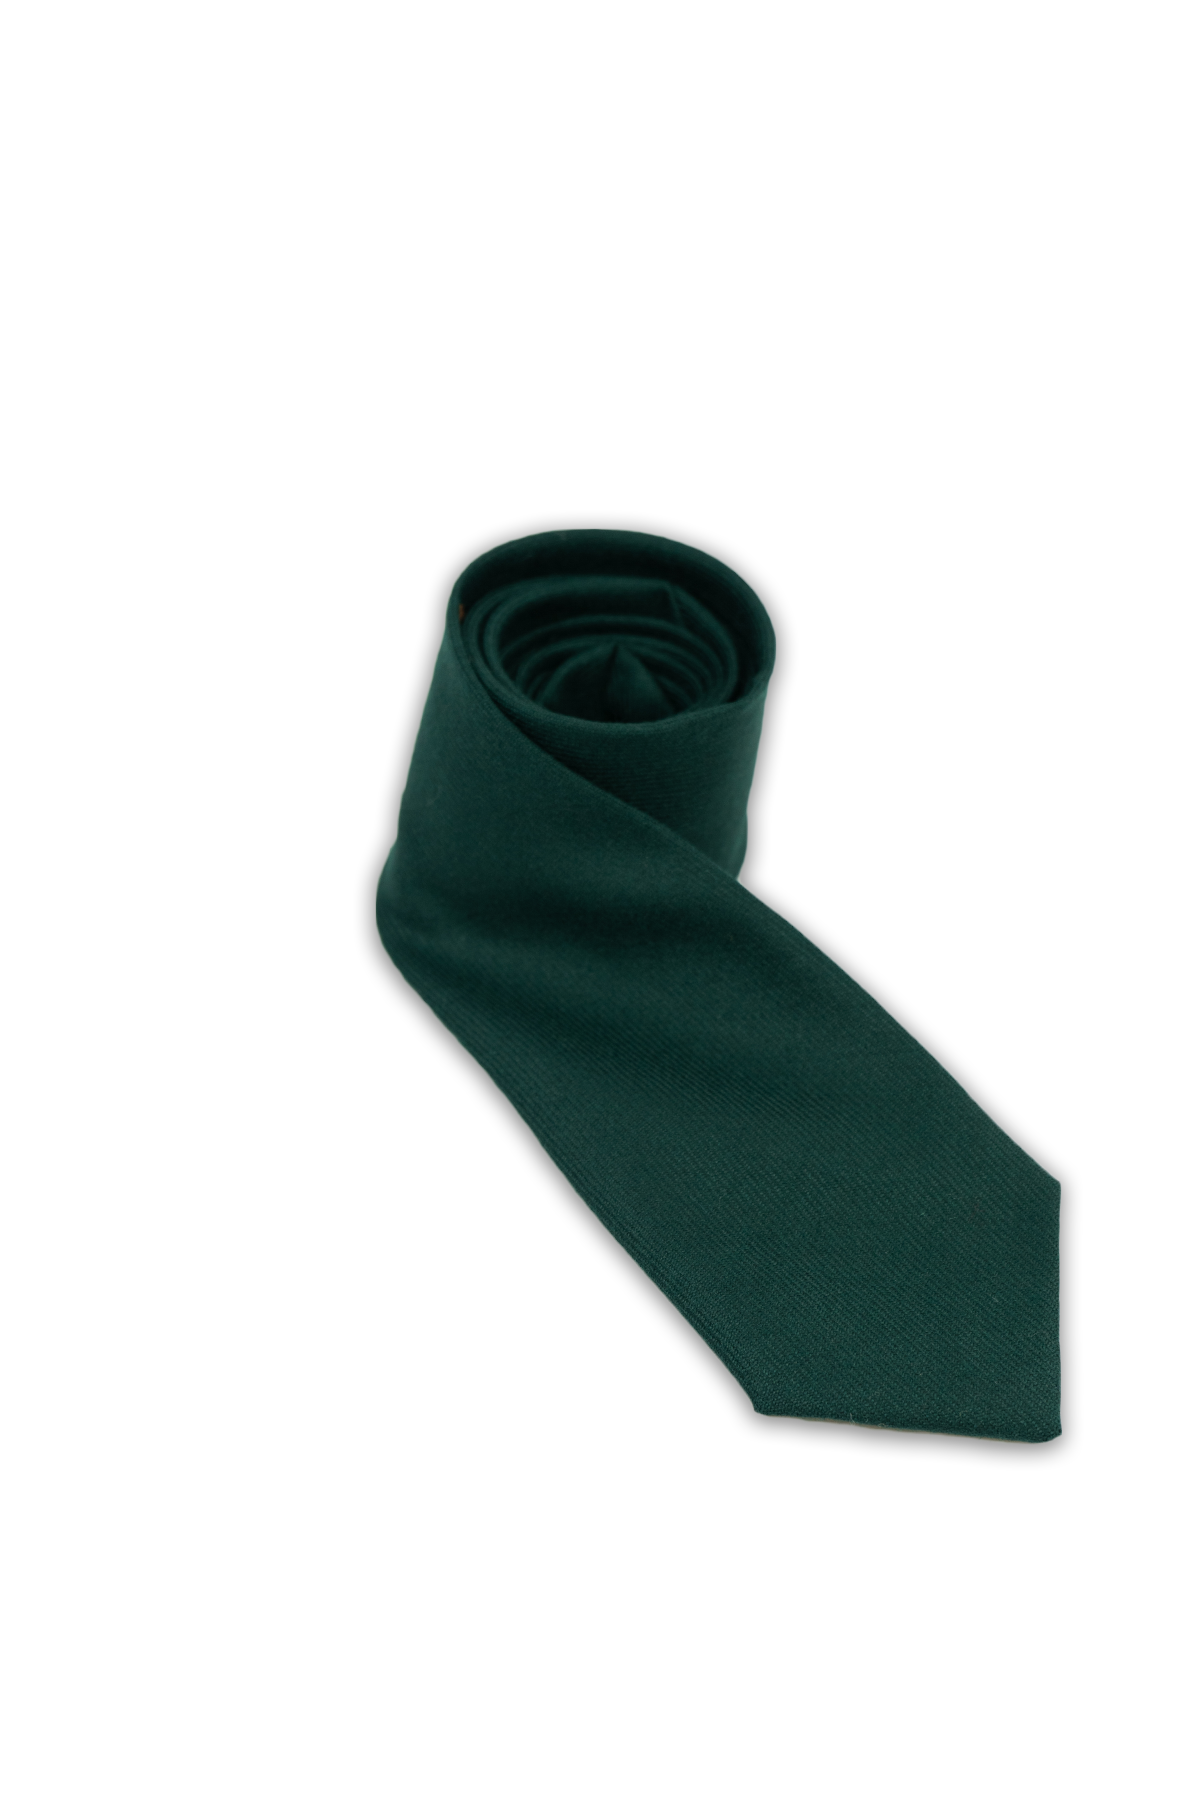 Green Modern Wool Tie (House of Edgar)